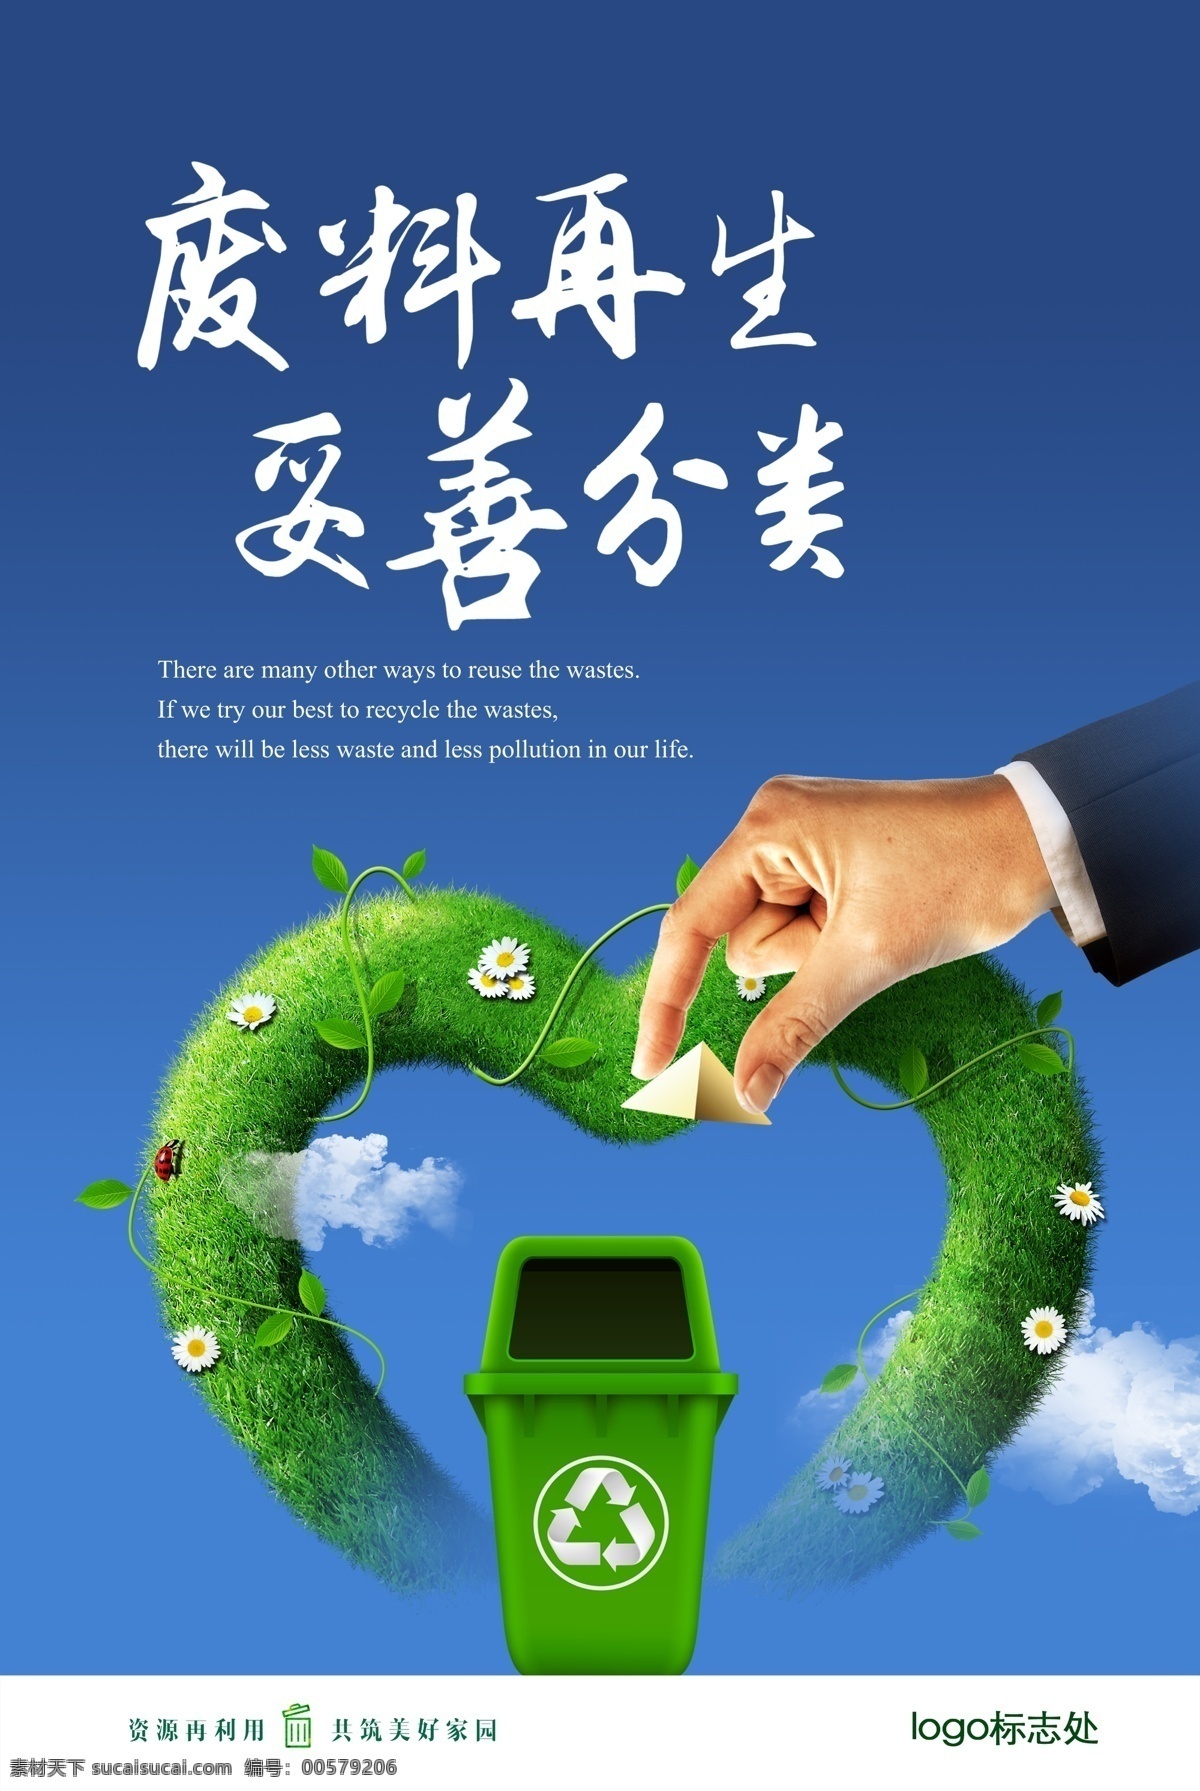 废料 再生 妥善 分类 绿色 心形 手 垃圾桶 蓝天 白云 企业环保展板 企业形象 宣传 用品 展板模板